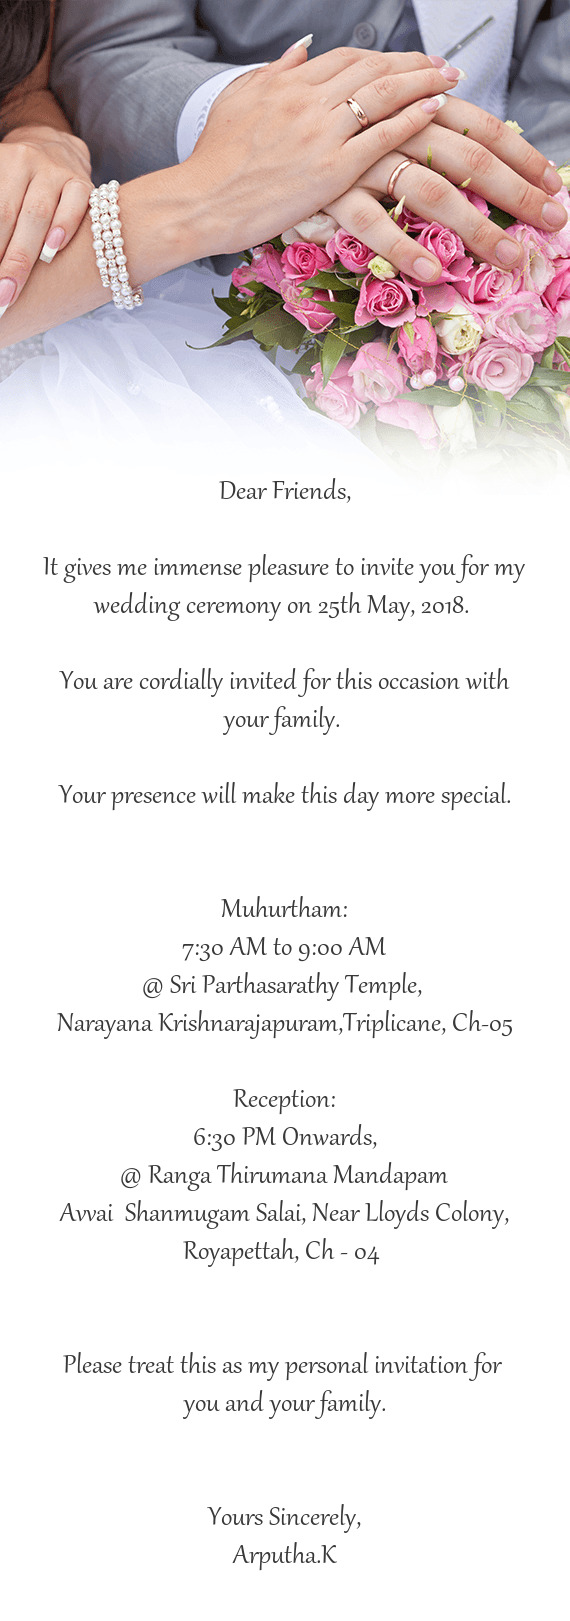 Narayana Krishnarajapuram,Triplicane, Ch-05